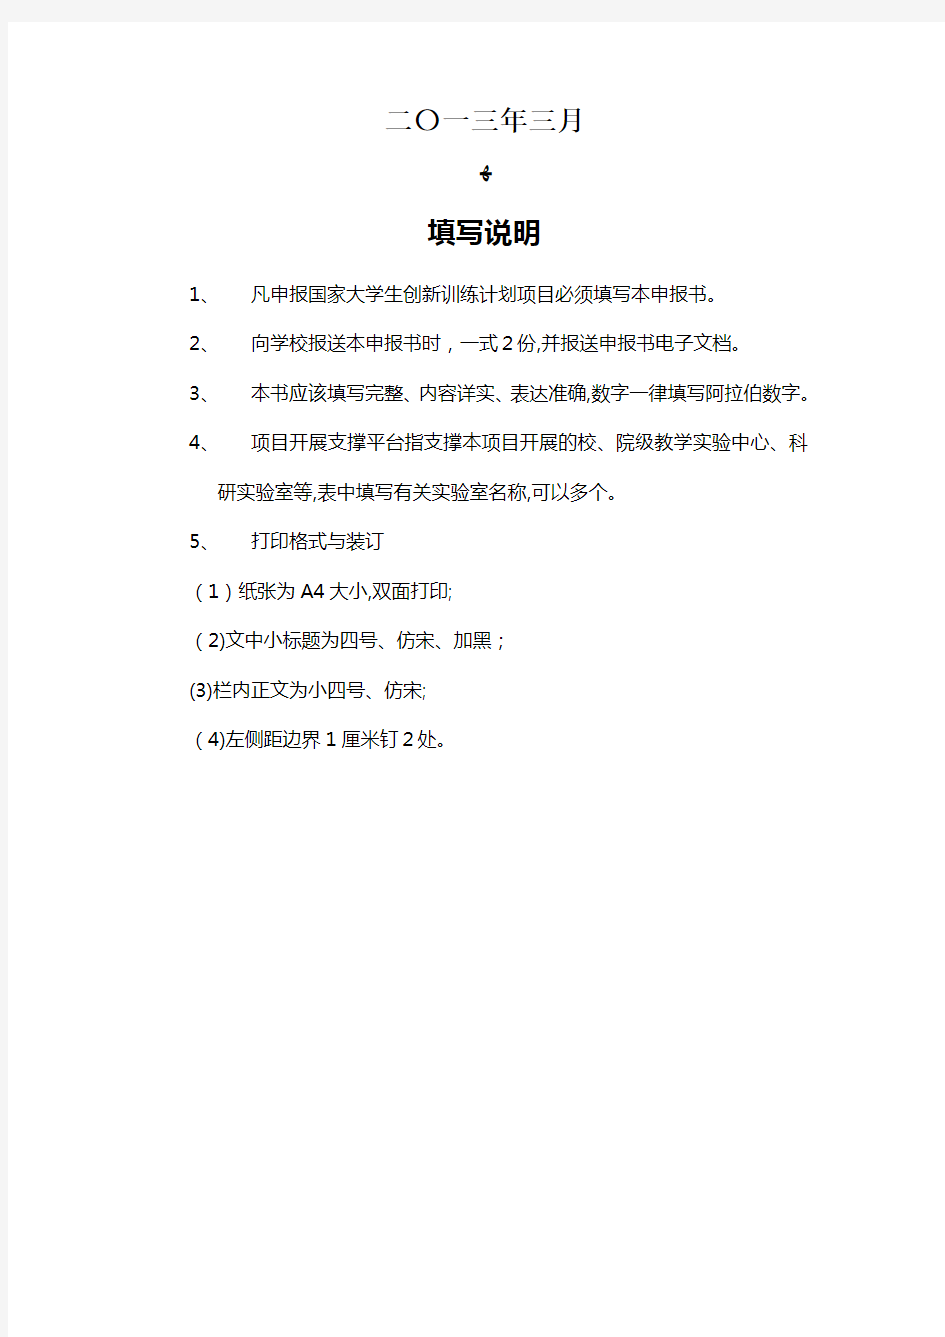 上海交通大学国家大学生创新性实验计划项目管理办法001 (2).doc